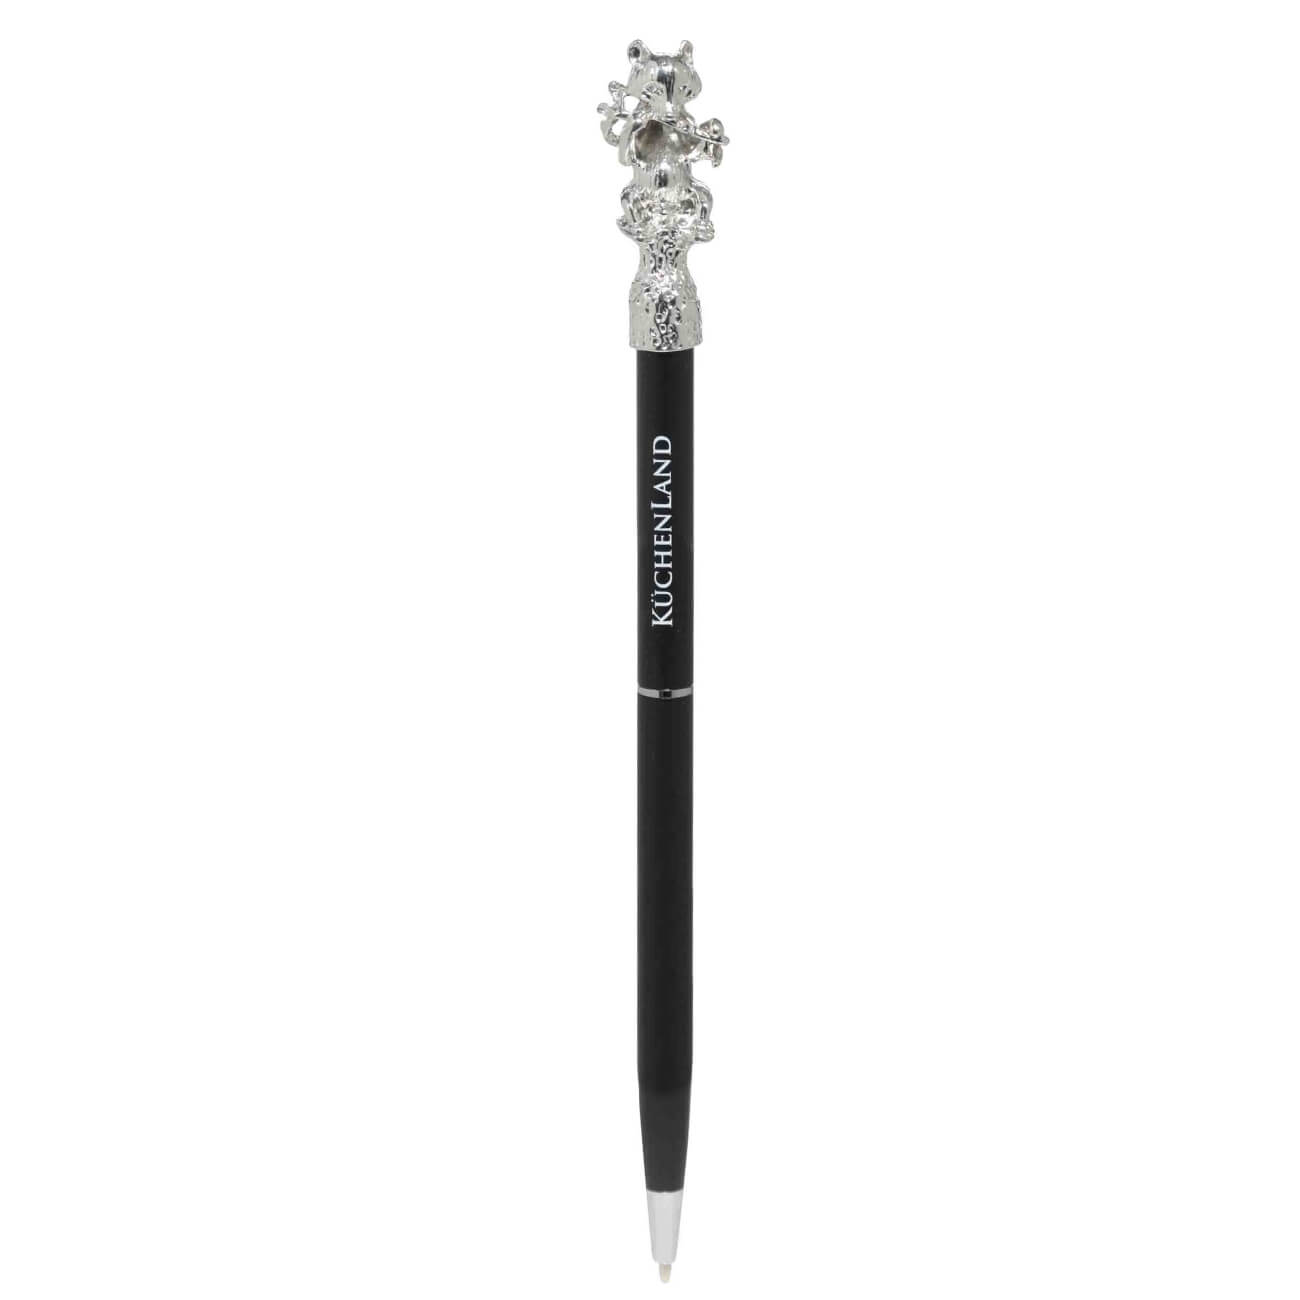 Ручка шариковая, 16 см, с фигуркой, сталь, черная, Панда, Draw figure